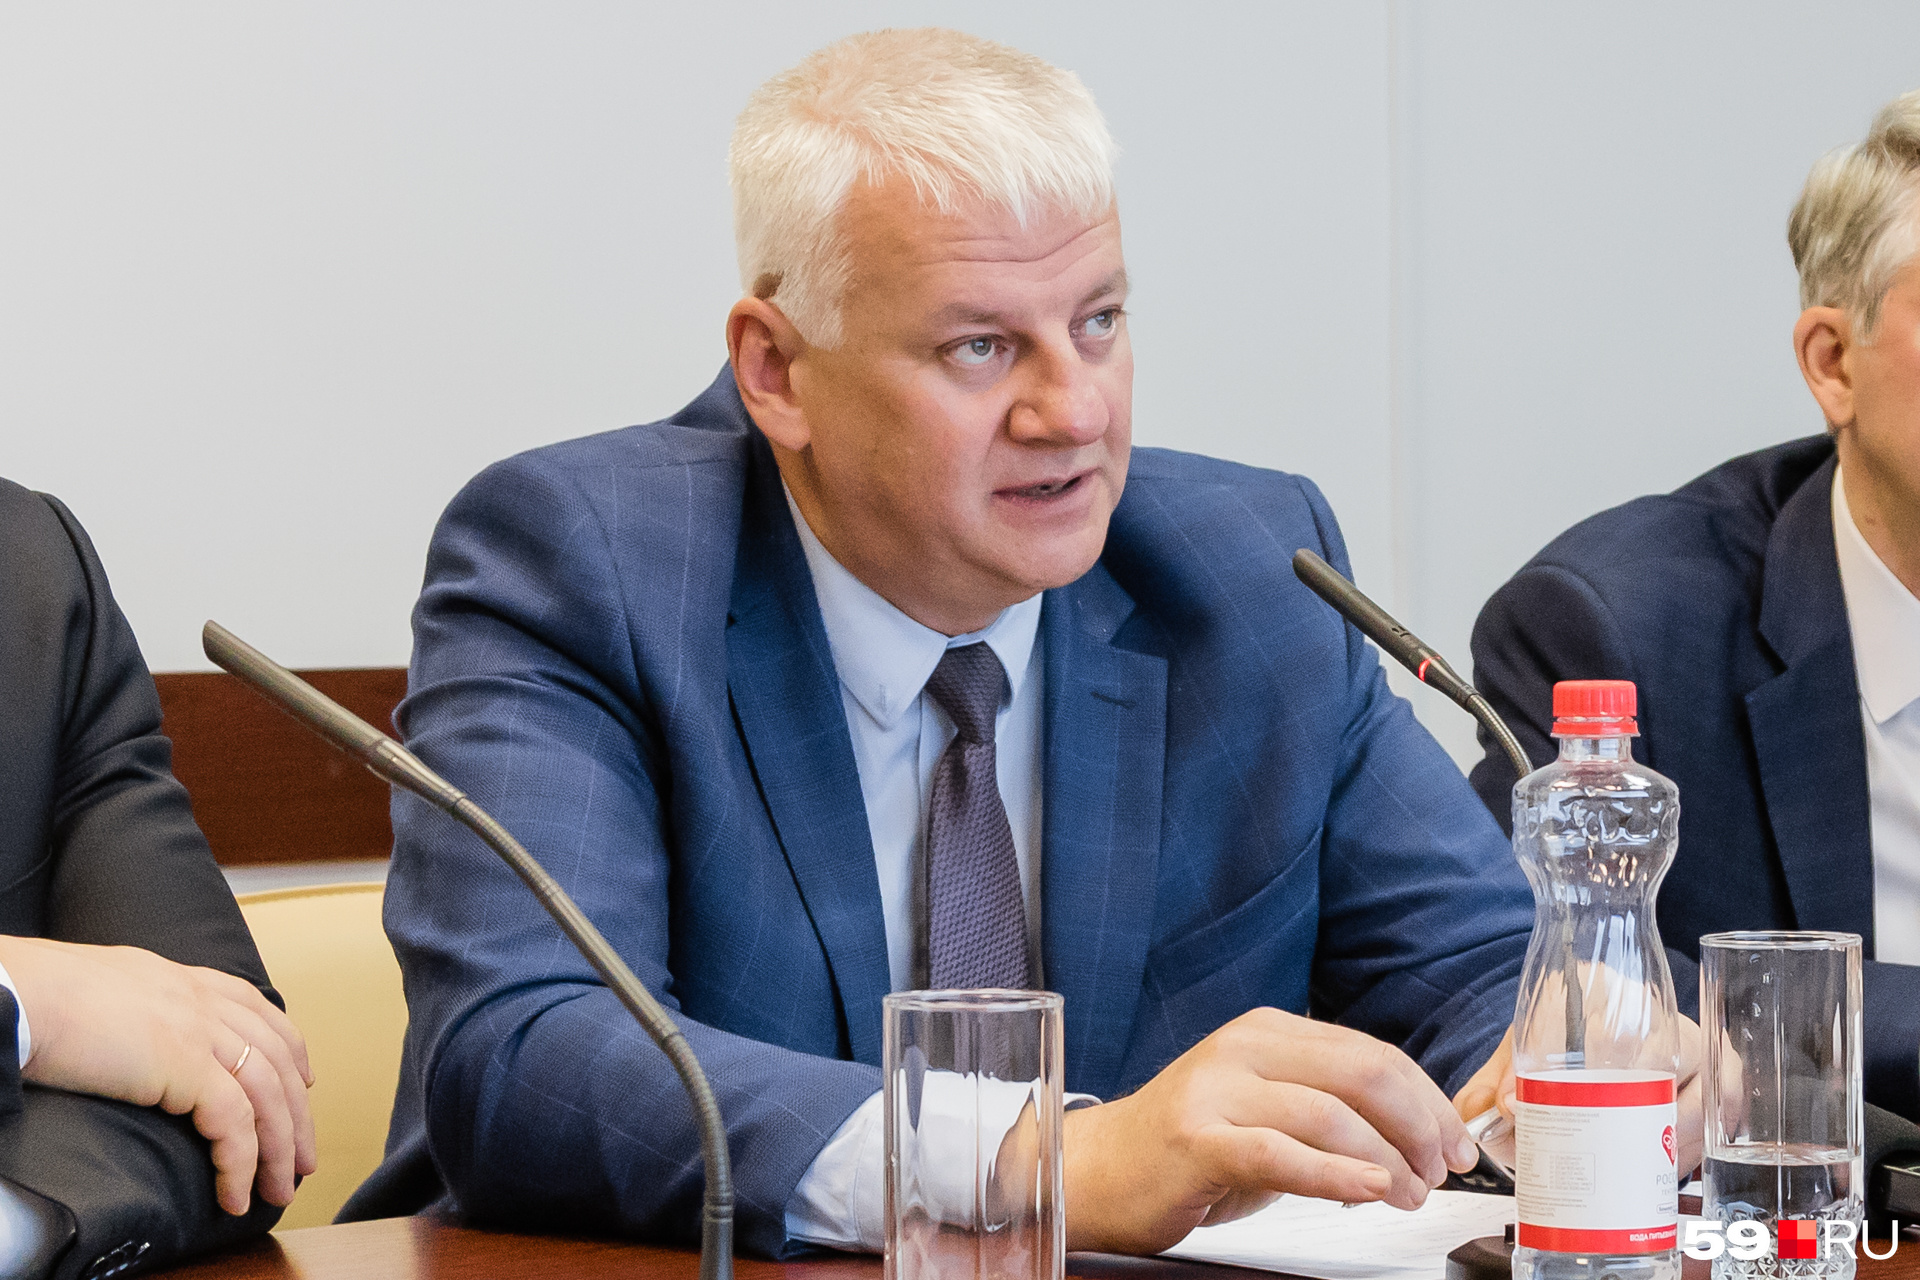 Генеральный директор «Пермской пригородной компании» Сергей Канцур заявил, что точной даты закрытия путей нет